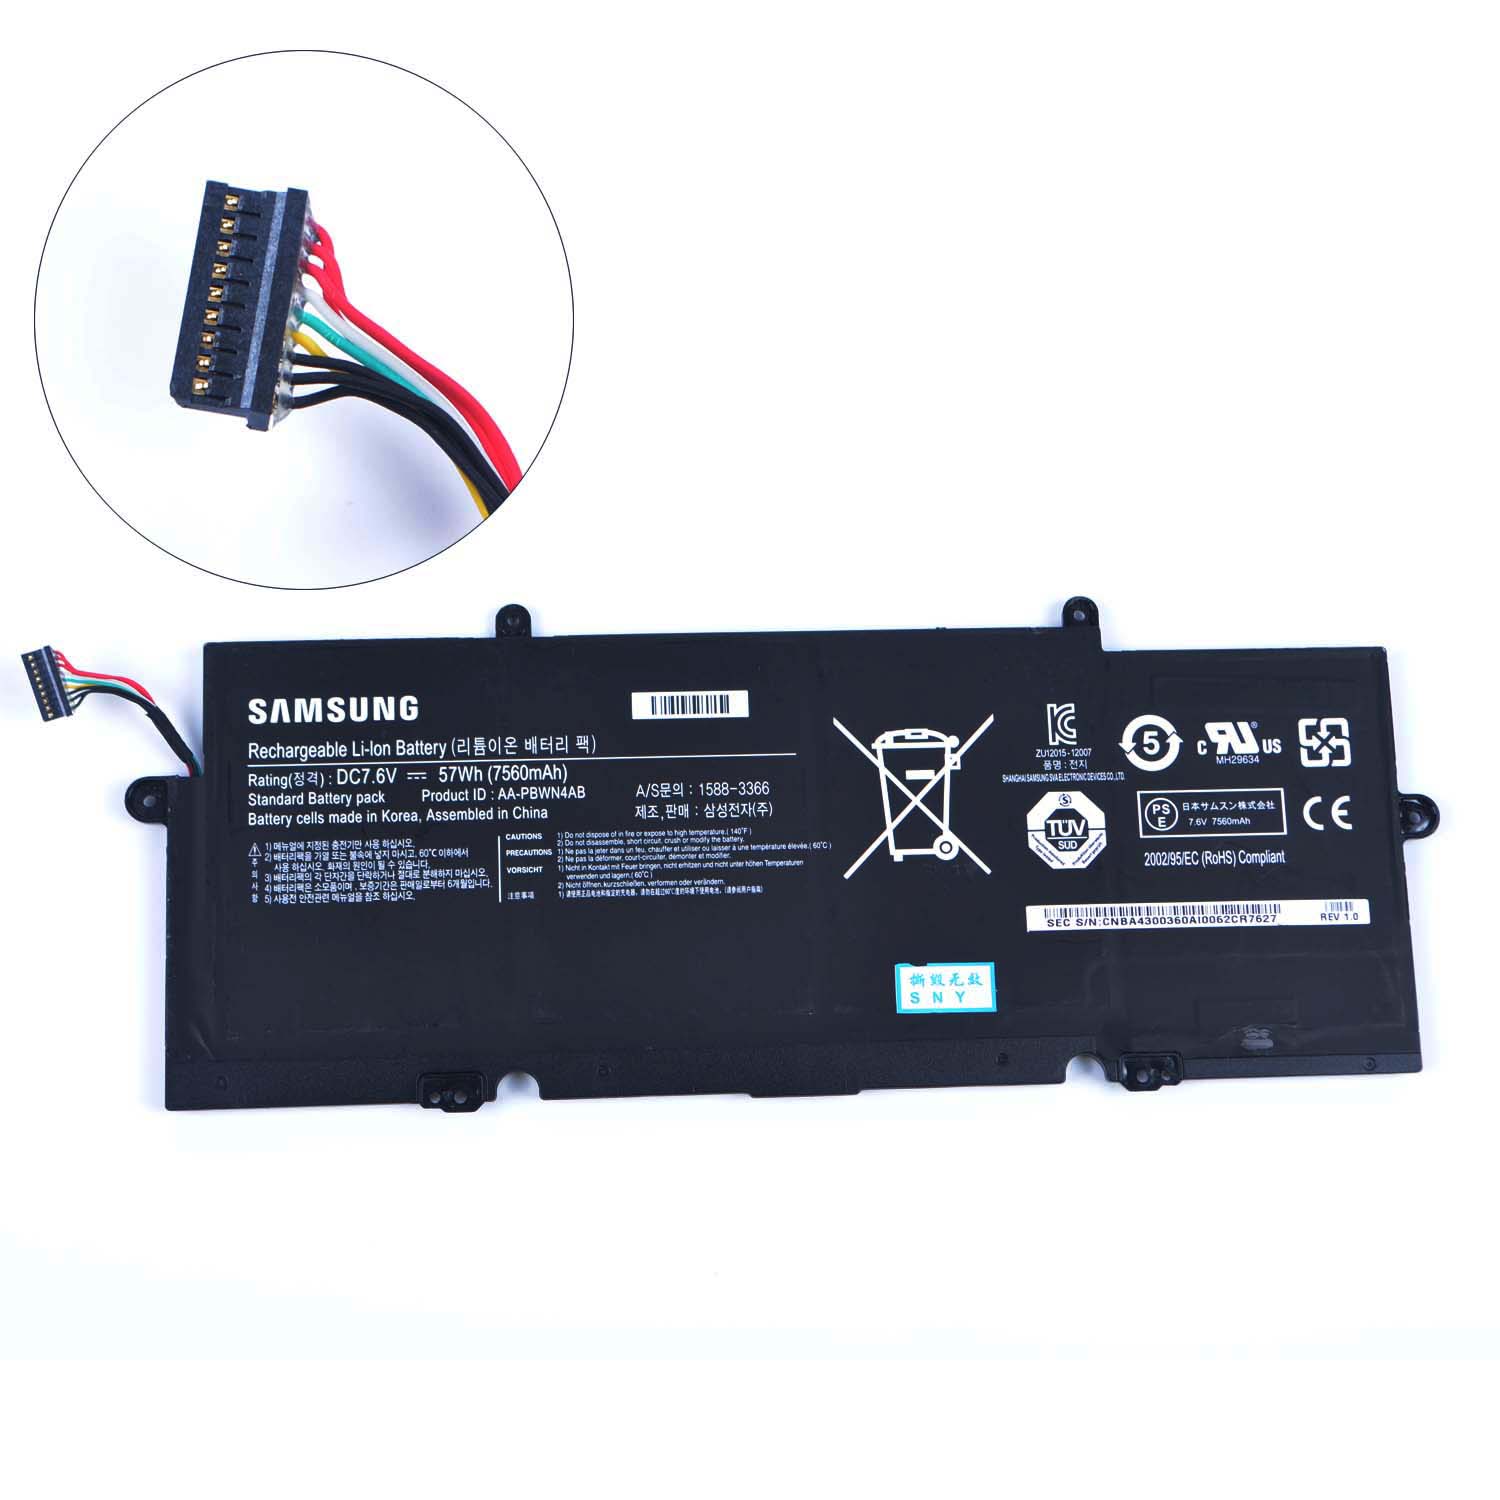 Samsung 530U4E batería